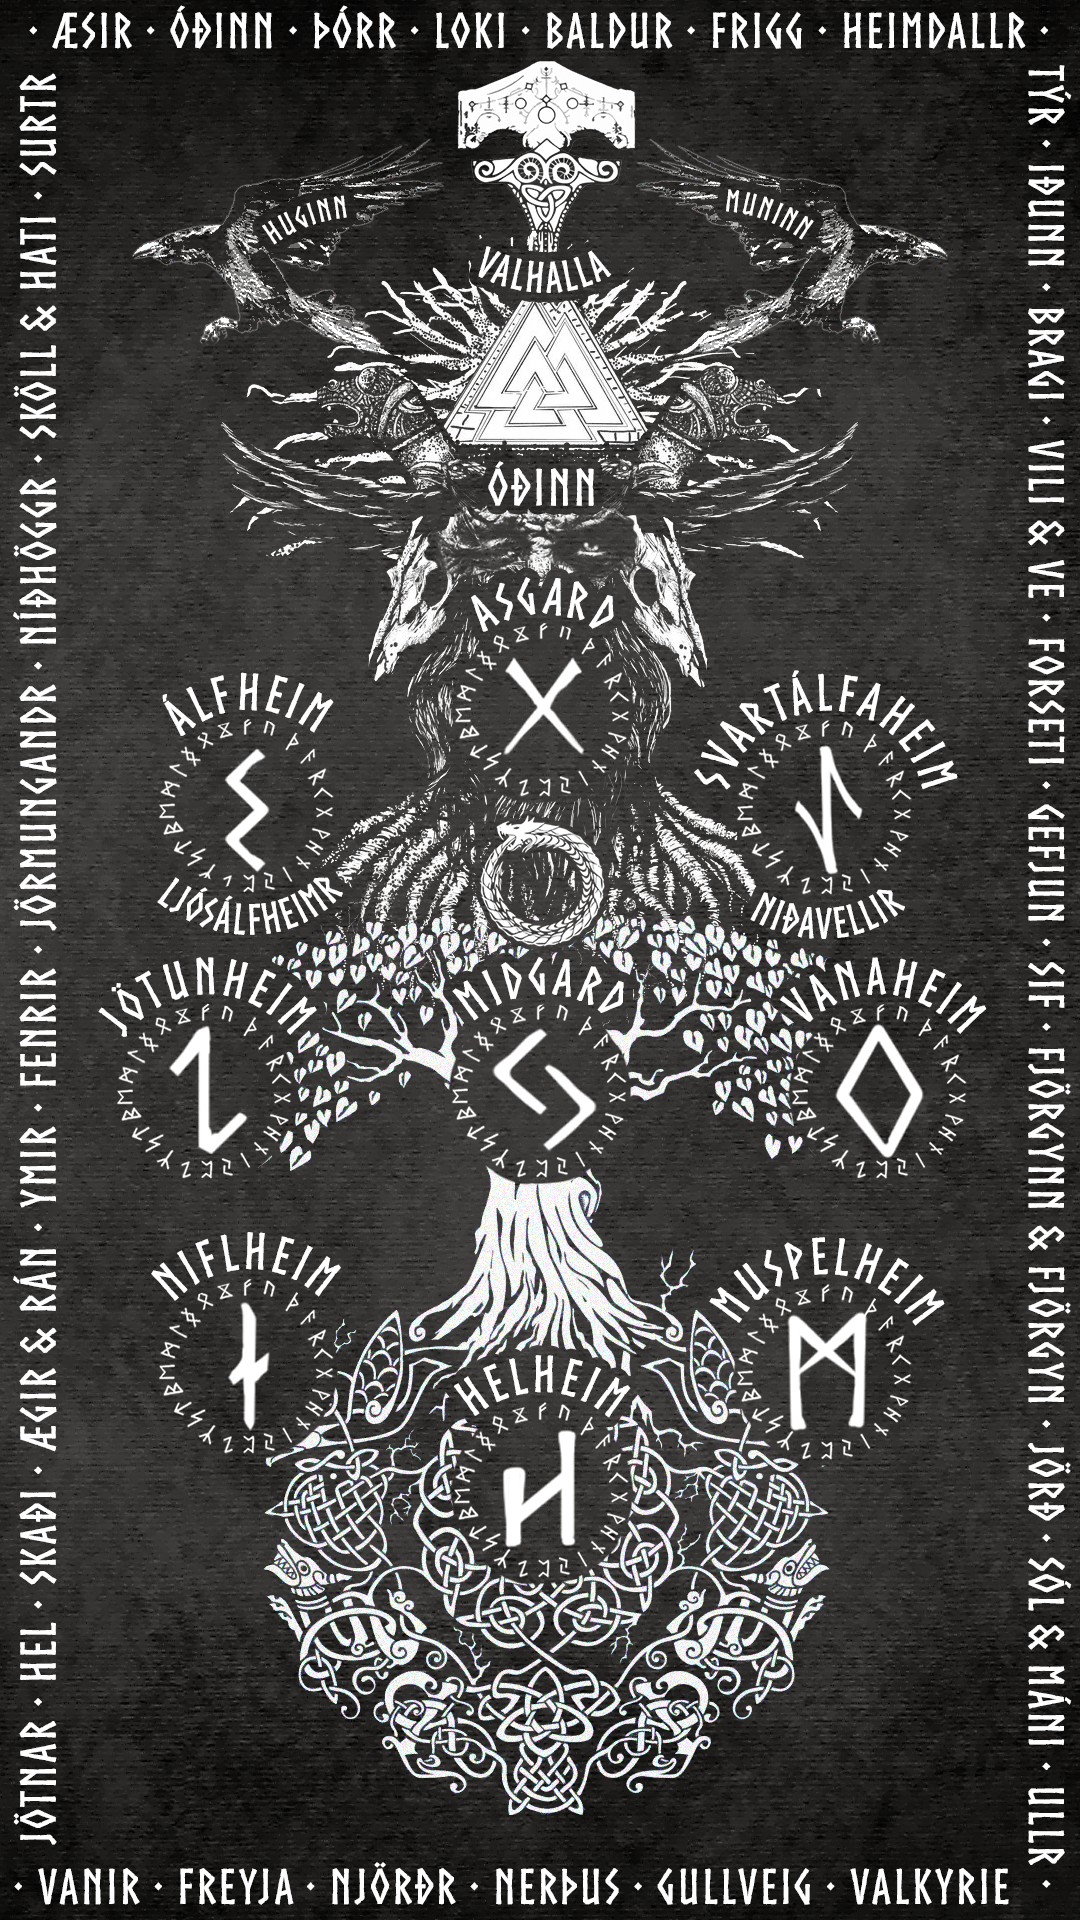 Yggdrasil Norse mythology based graphic design